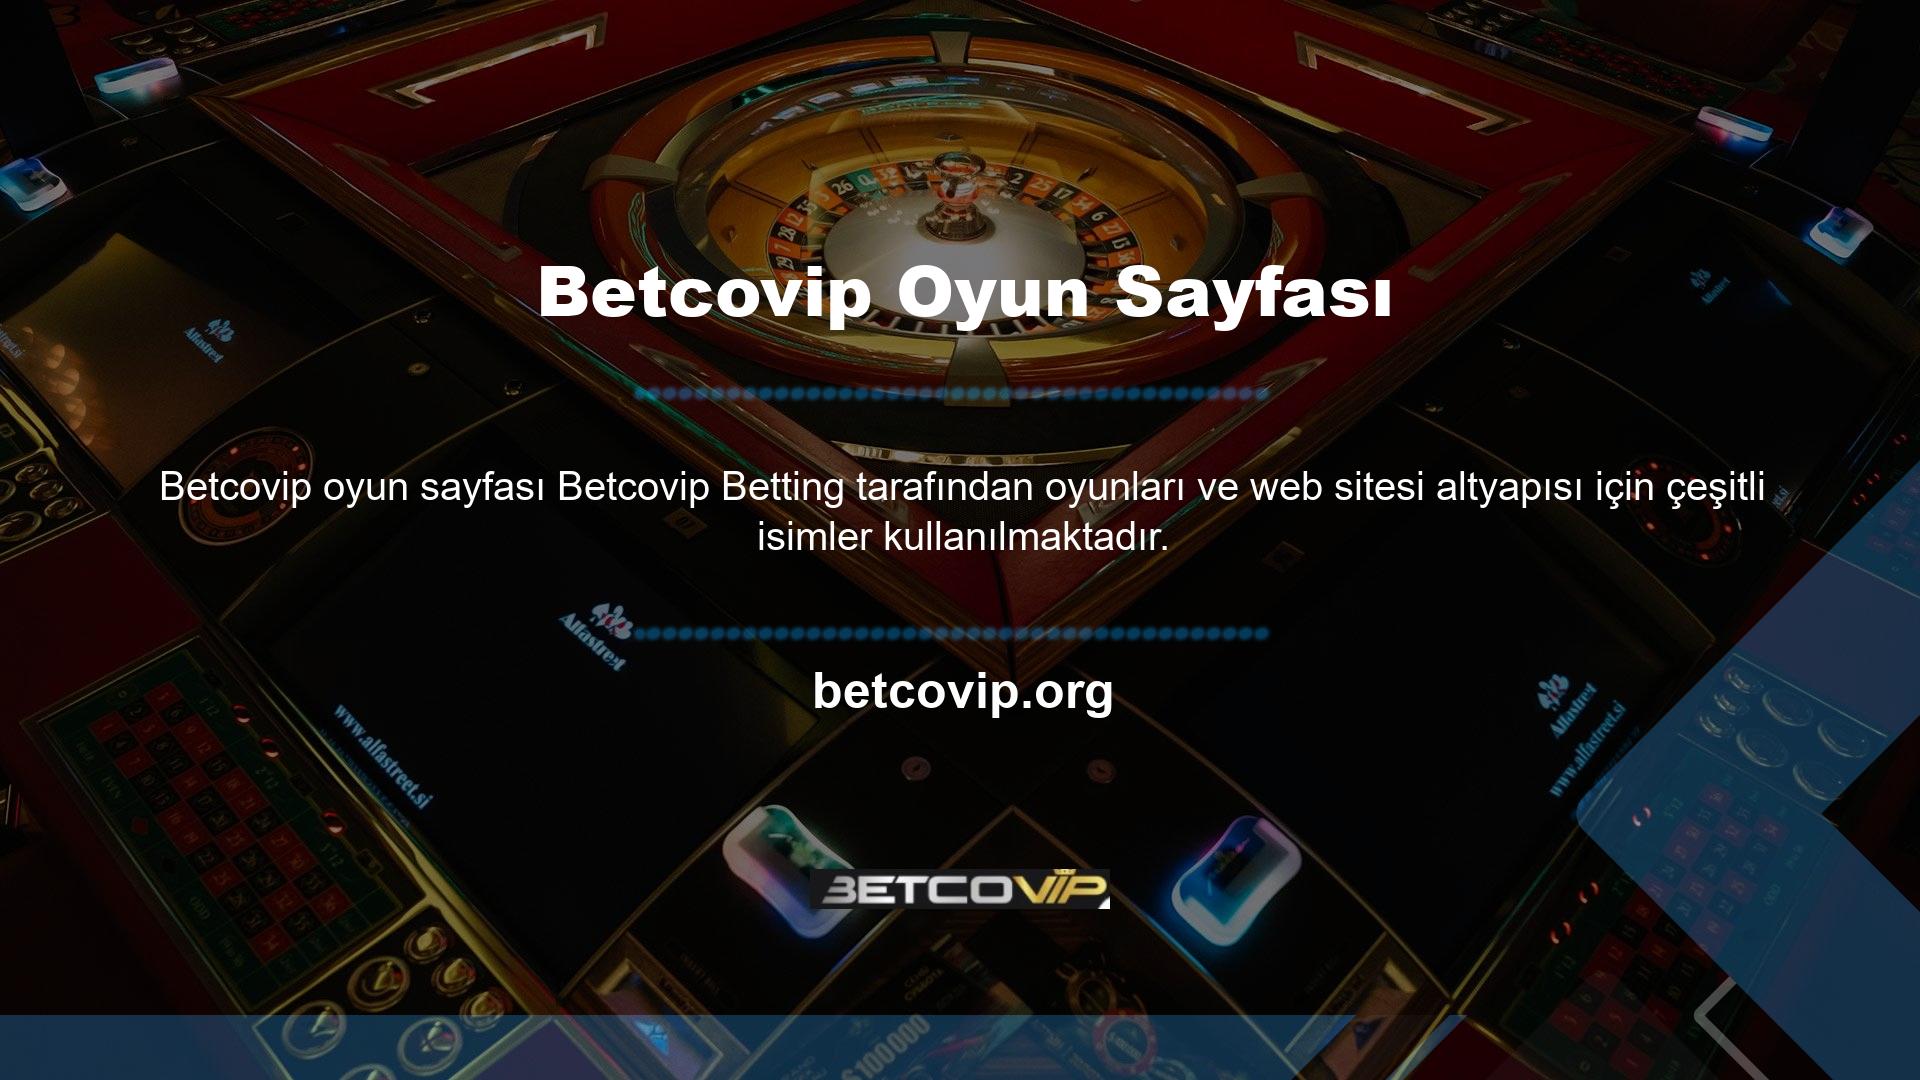 Site, Betcovip sevenlerin programlarına ayak uydurmaları ve spordan keyif almaları için çeşitli oyunlar sunuyor